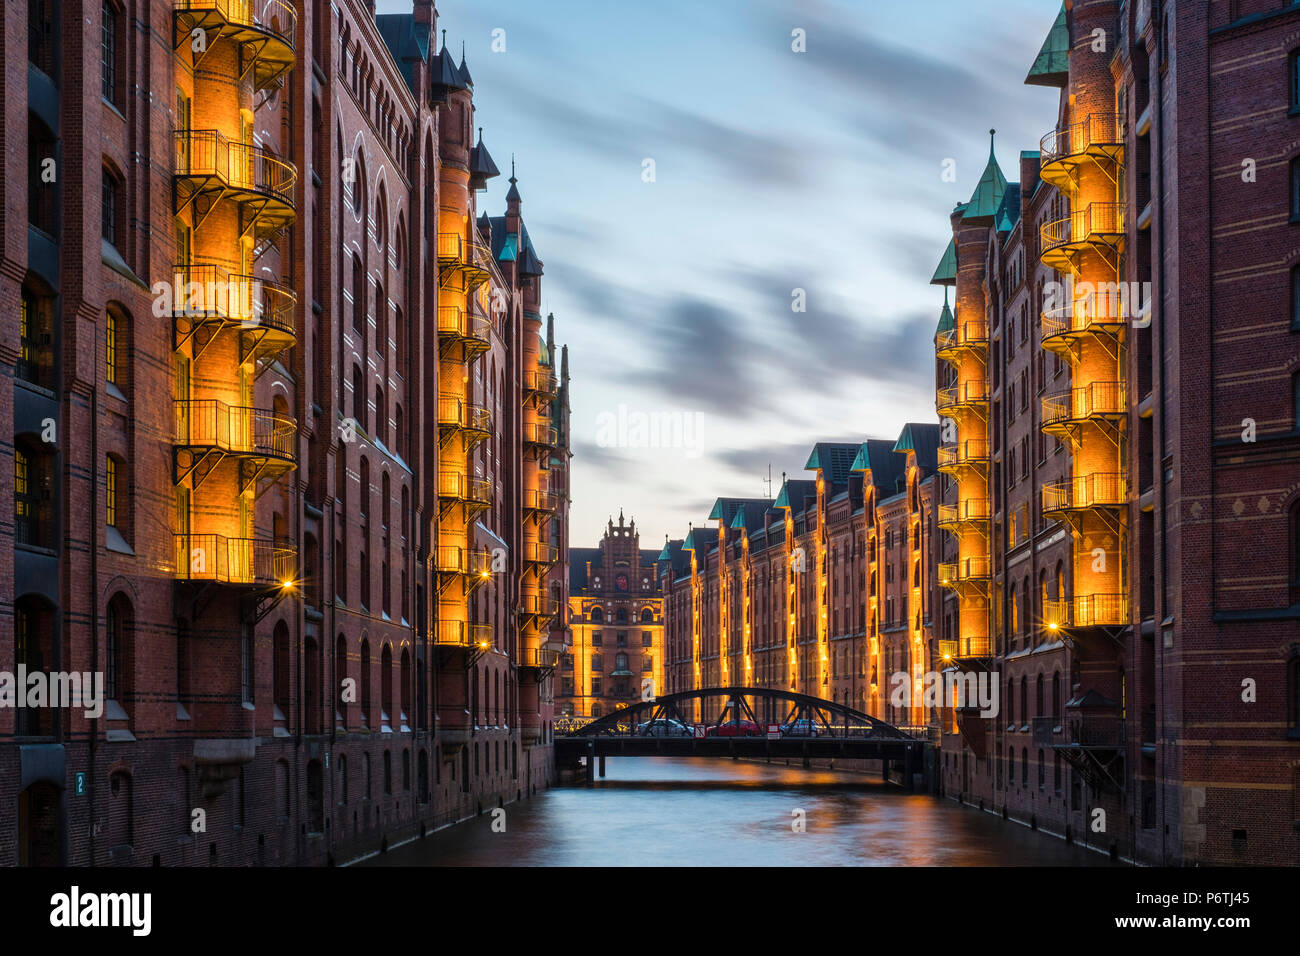 Germania, Amburgo, HafenCity. Magazzini storico sul canal Wandrahmsfleet nella Speicherstadt trimestre al crepuscolo, Sito Patrimonio Mondiale dell'UNESCO. Foto Stock